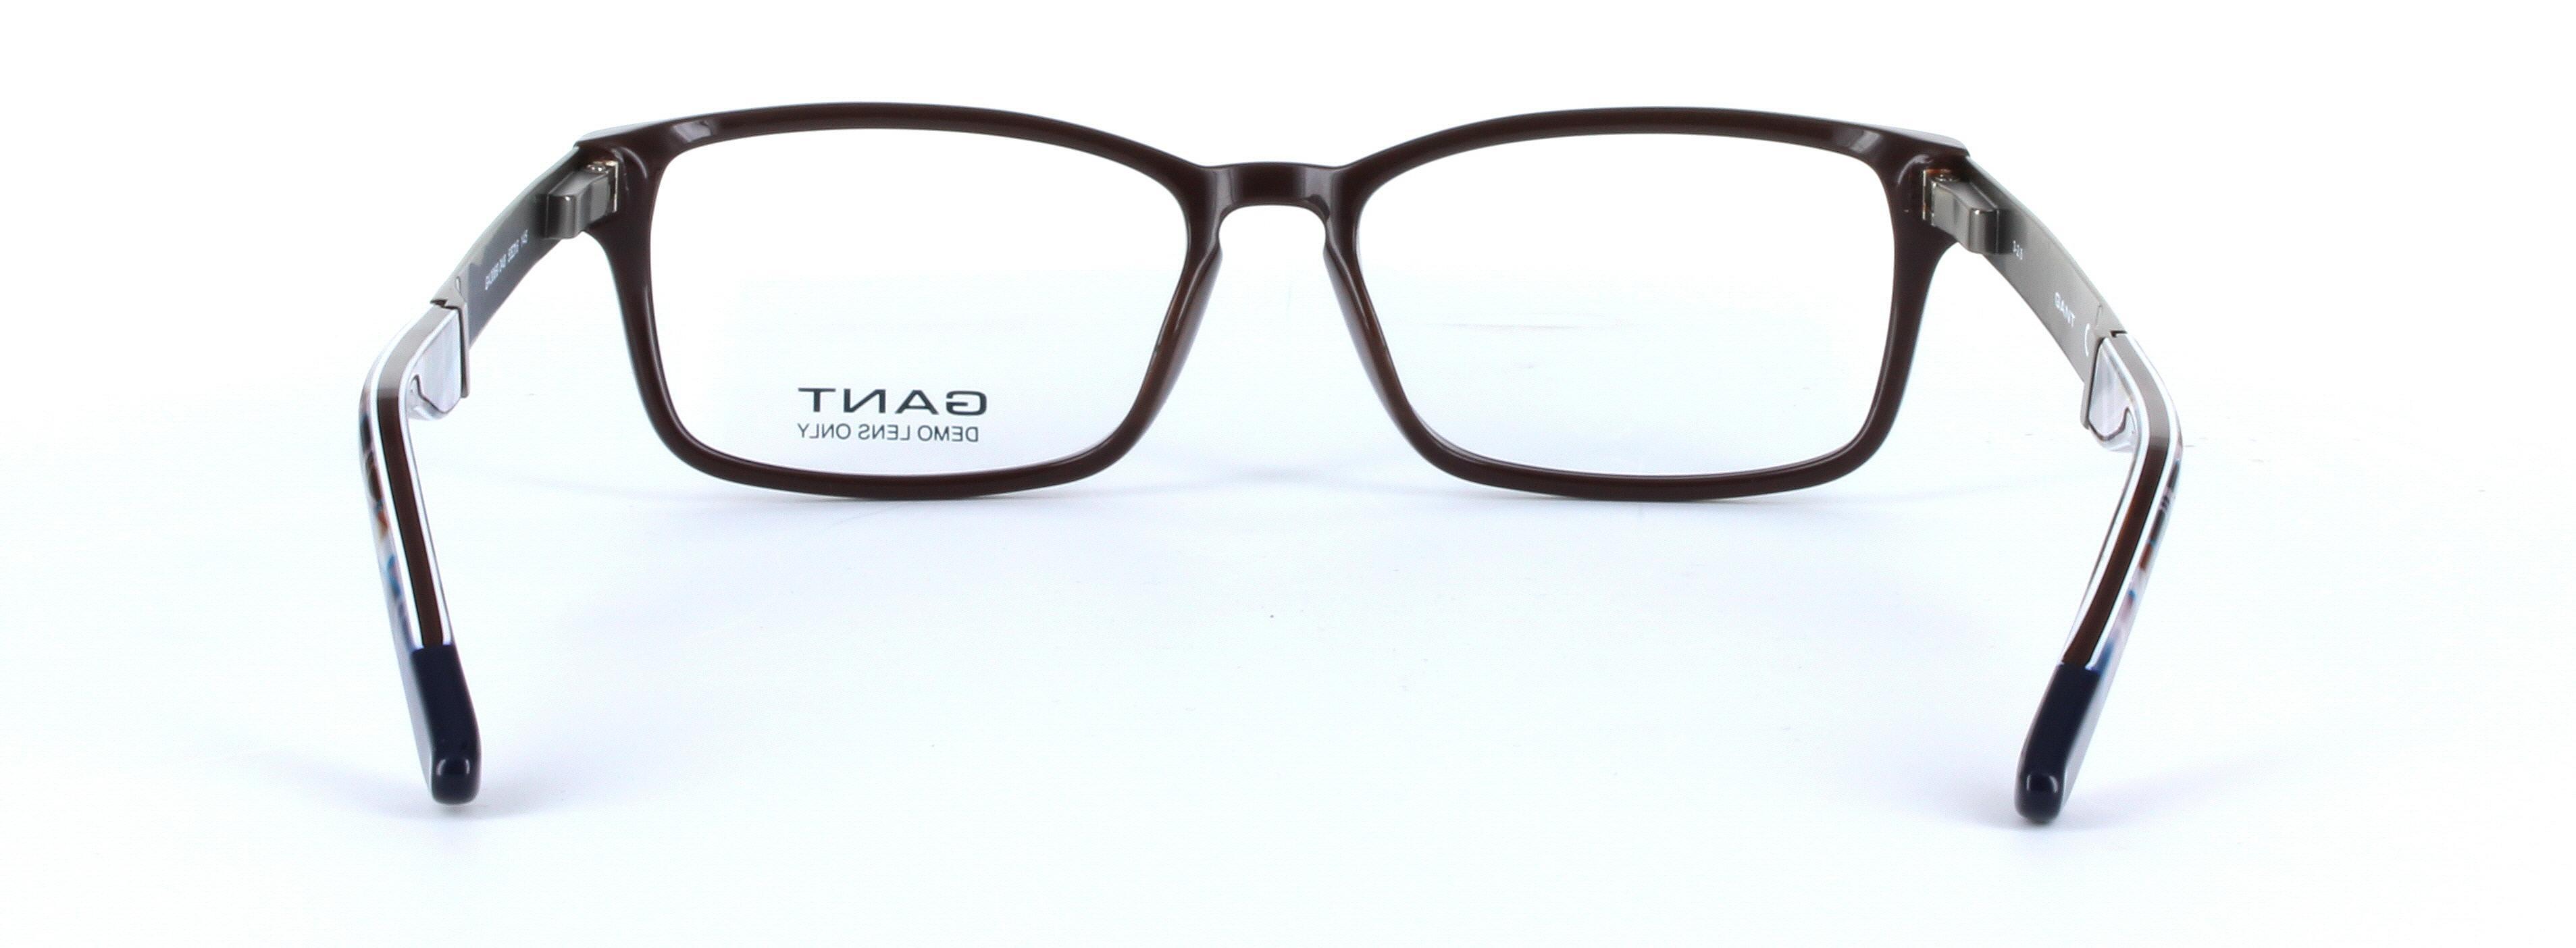 GANT (GA3069-048) Brown Full Rim Oval Rectangular Acetate Glasses - Image View 3